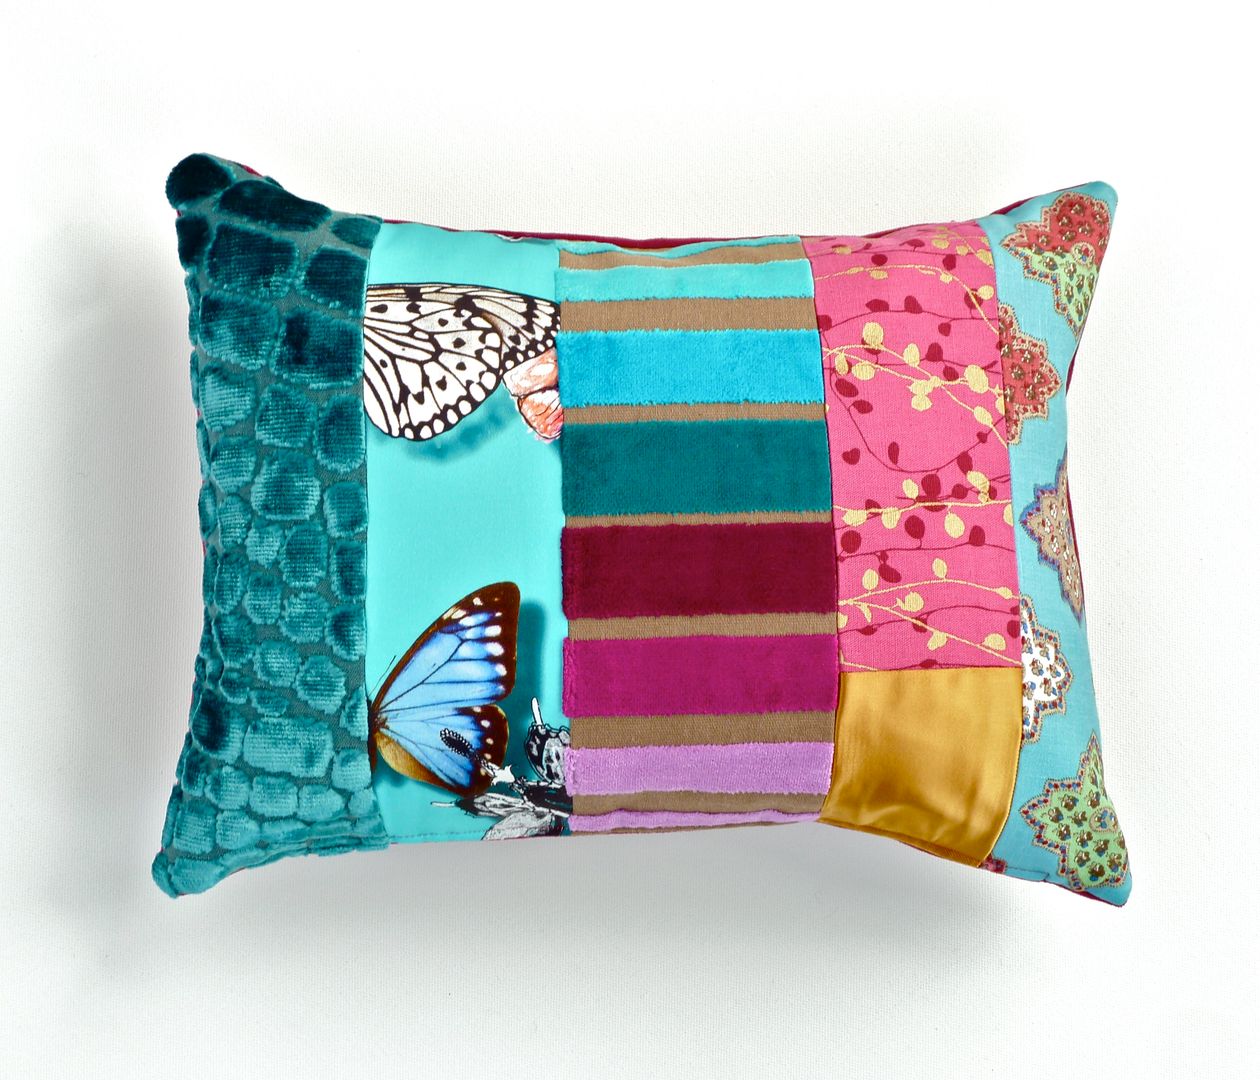 Rocco luxury patchwork cushion Suzy Newton Ltd. Salas de estilo ecléctico Accesorios y decoración